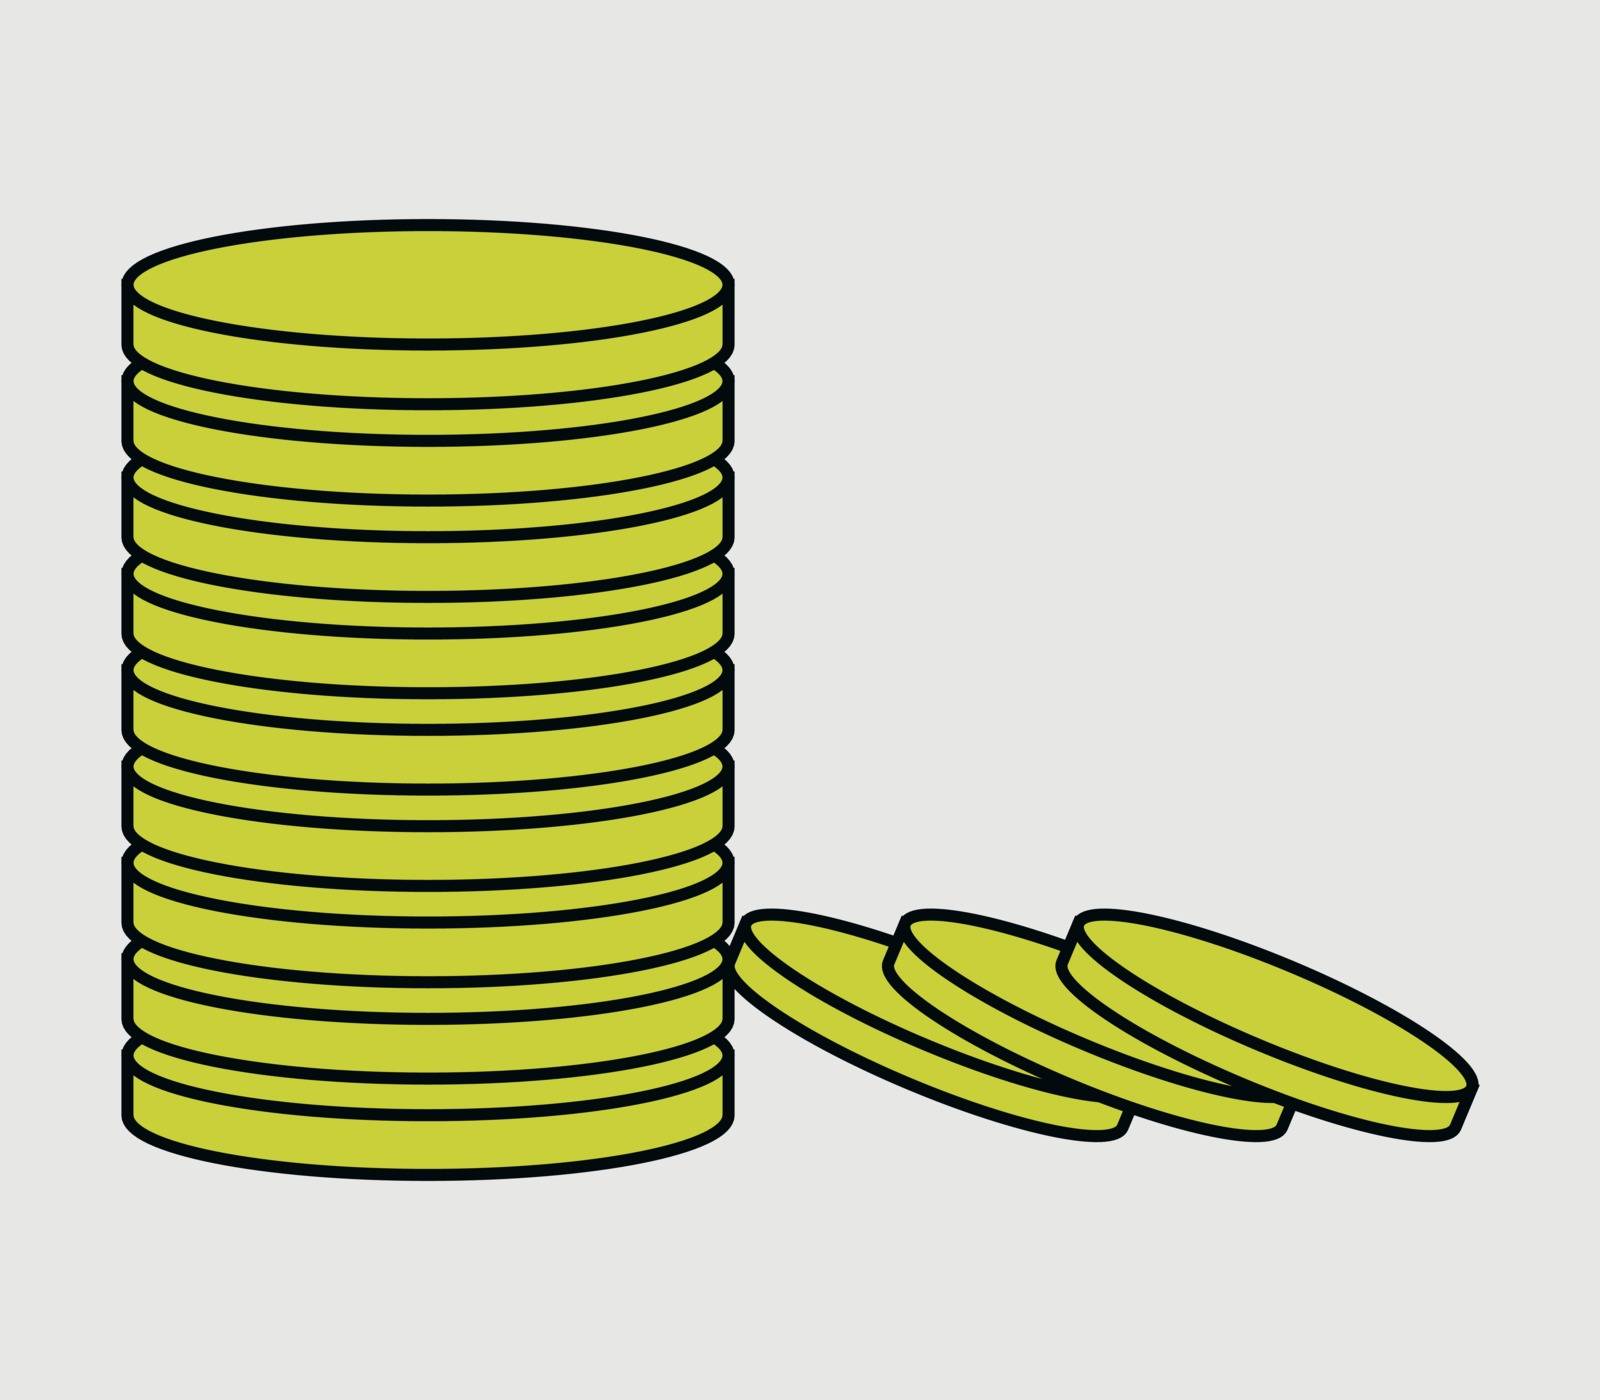 coin money icon